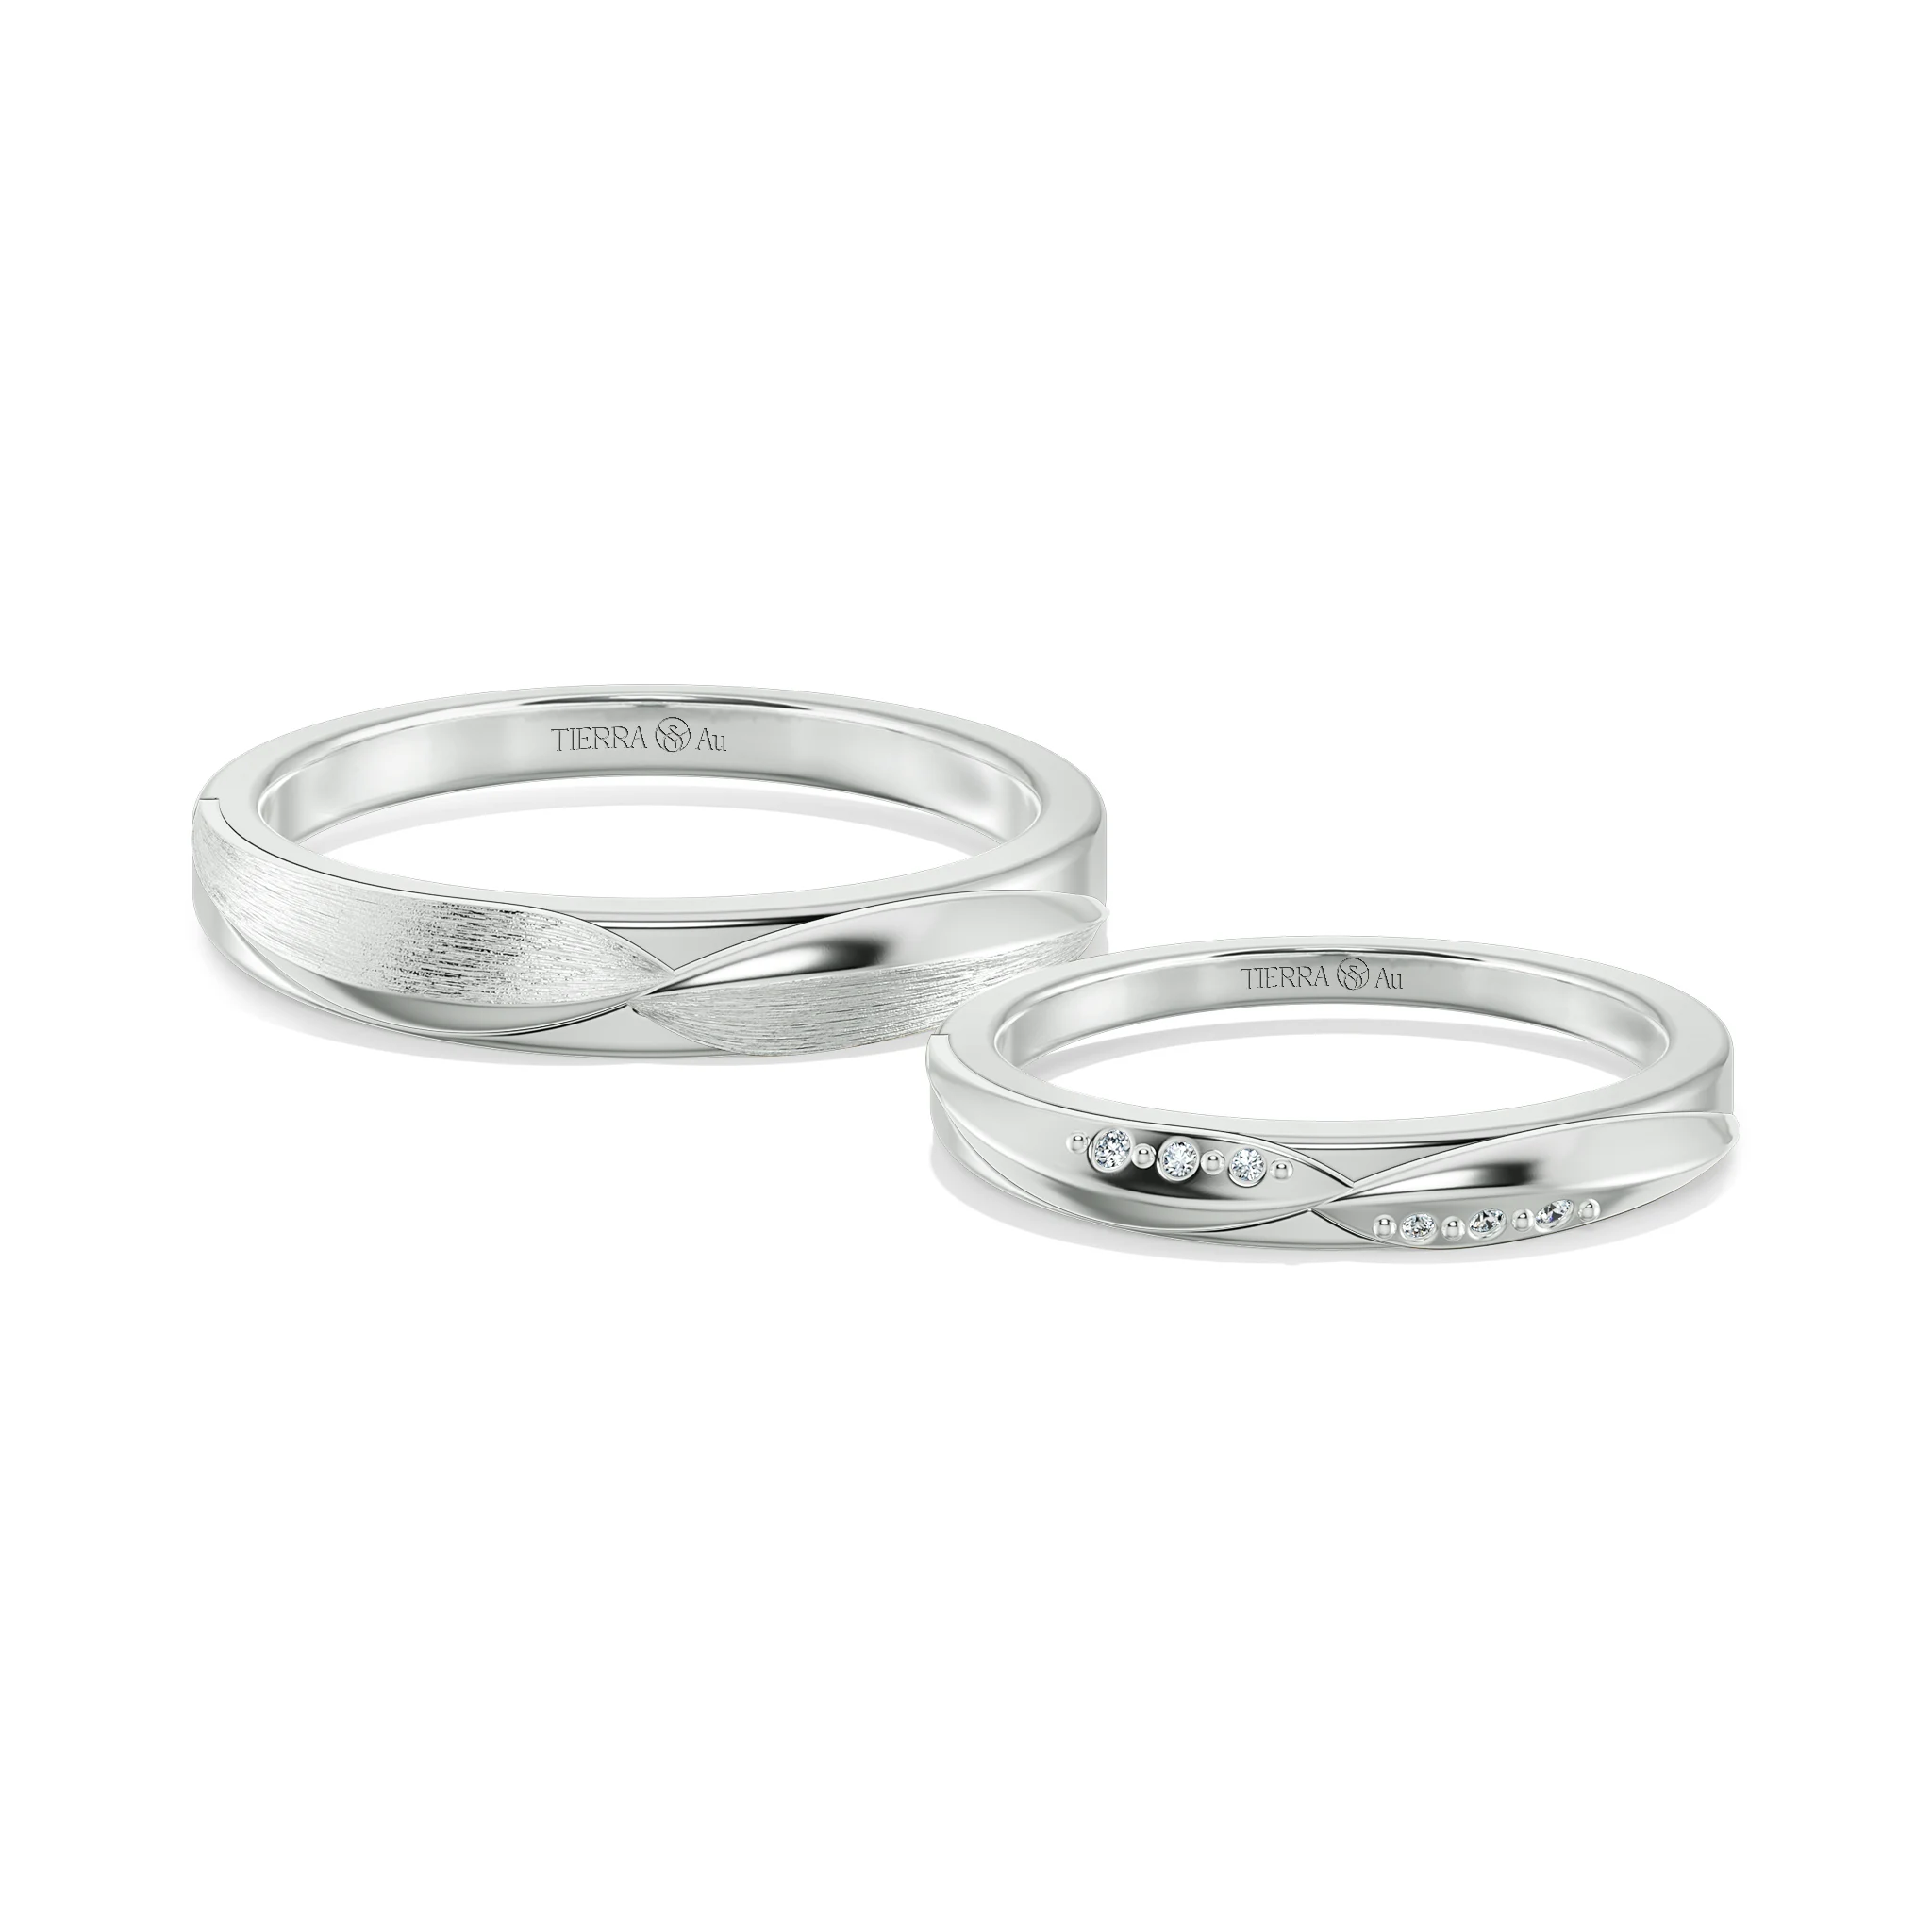 Cặp nhẫn cưới truyền thống NCC1043 1